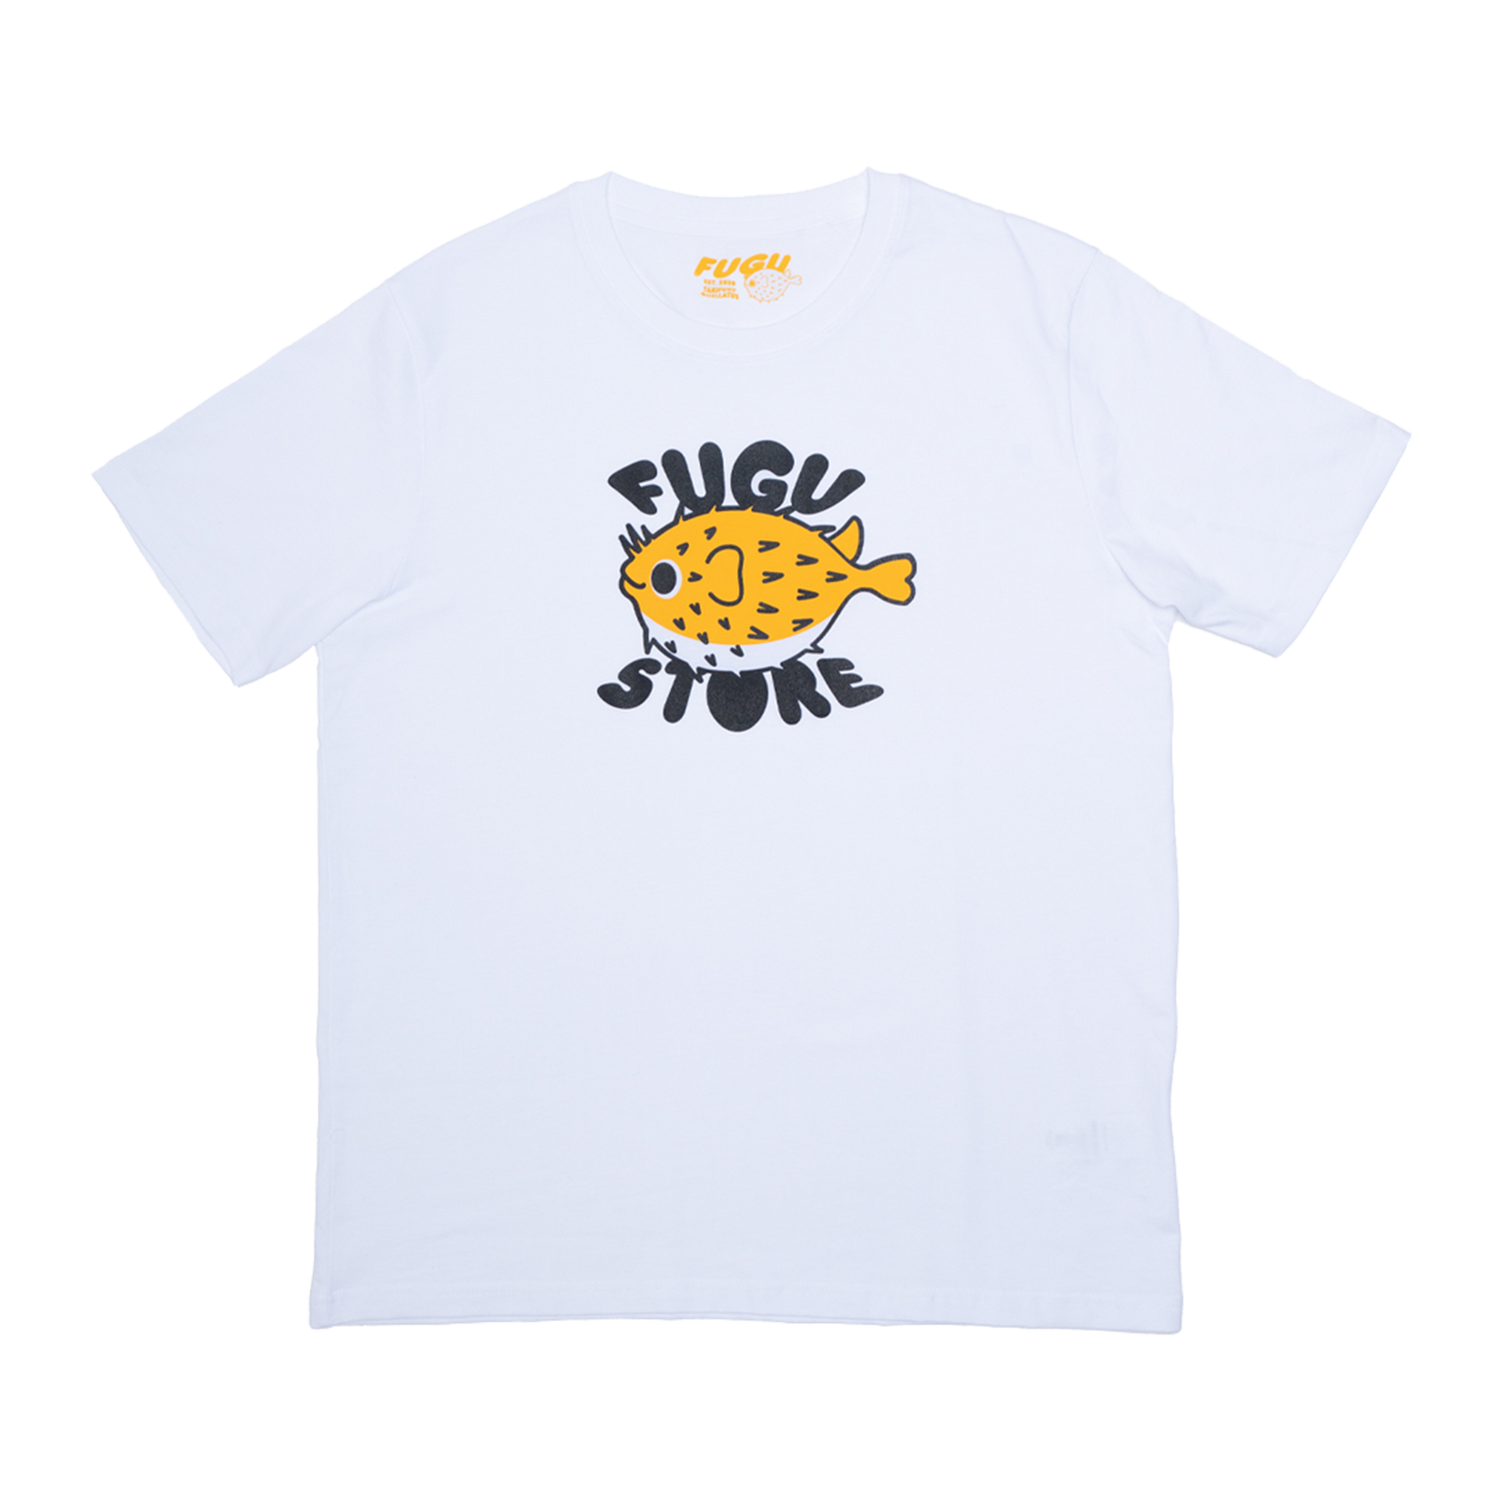 FUGU STORE T-SHIRT – Fugu Store